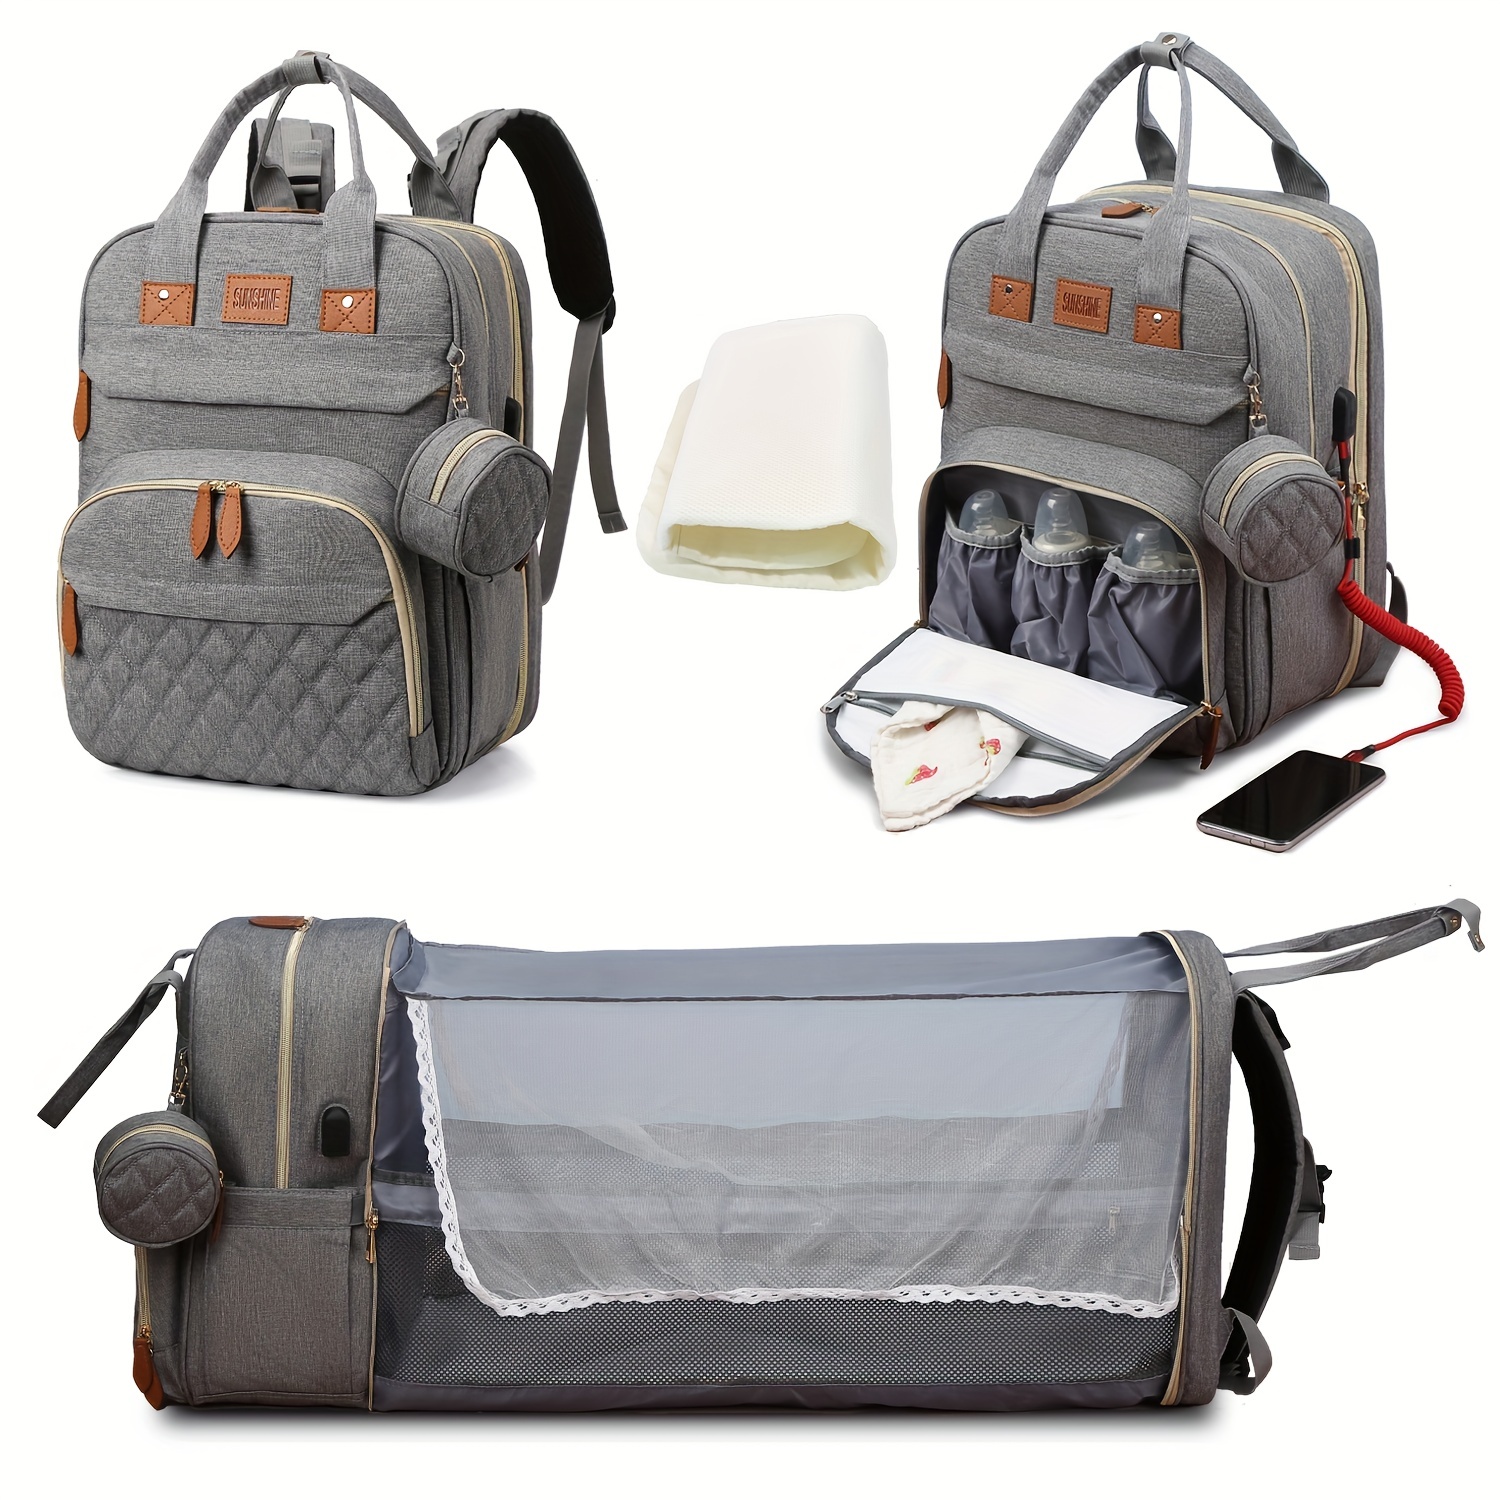 Mom's Women Diaper Bag Backpack - Best Diaper Bag Backpack for Women Mom  Gift, Affordable & Stylish Diaper Backpack Bag, UPPER